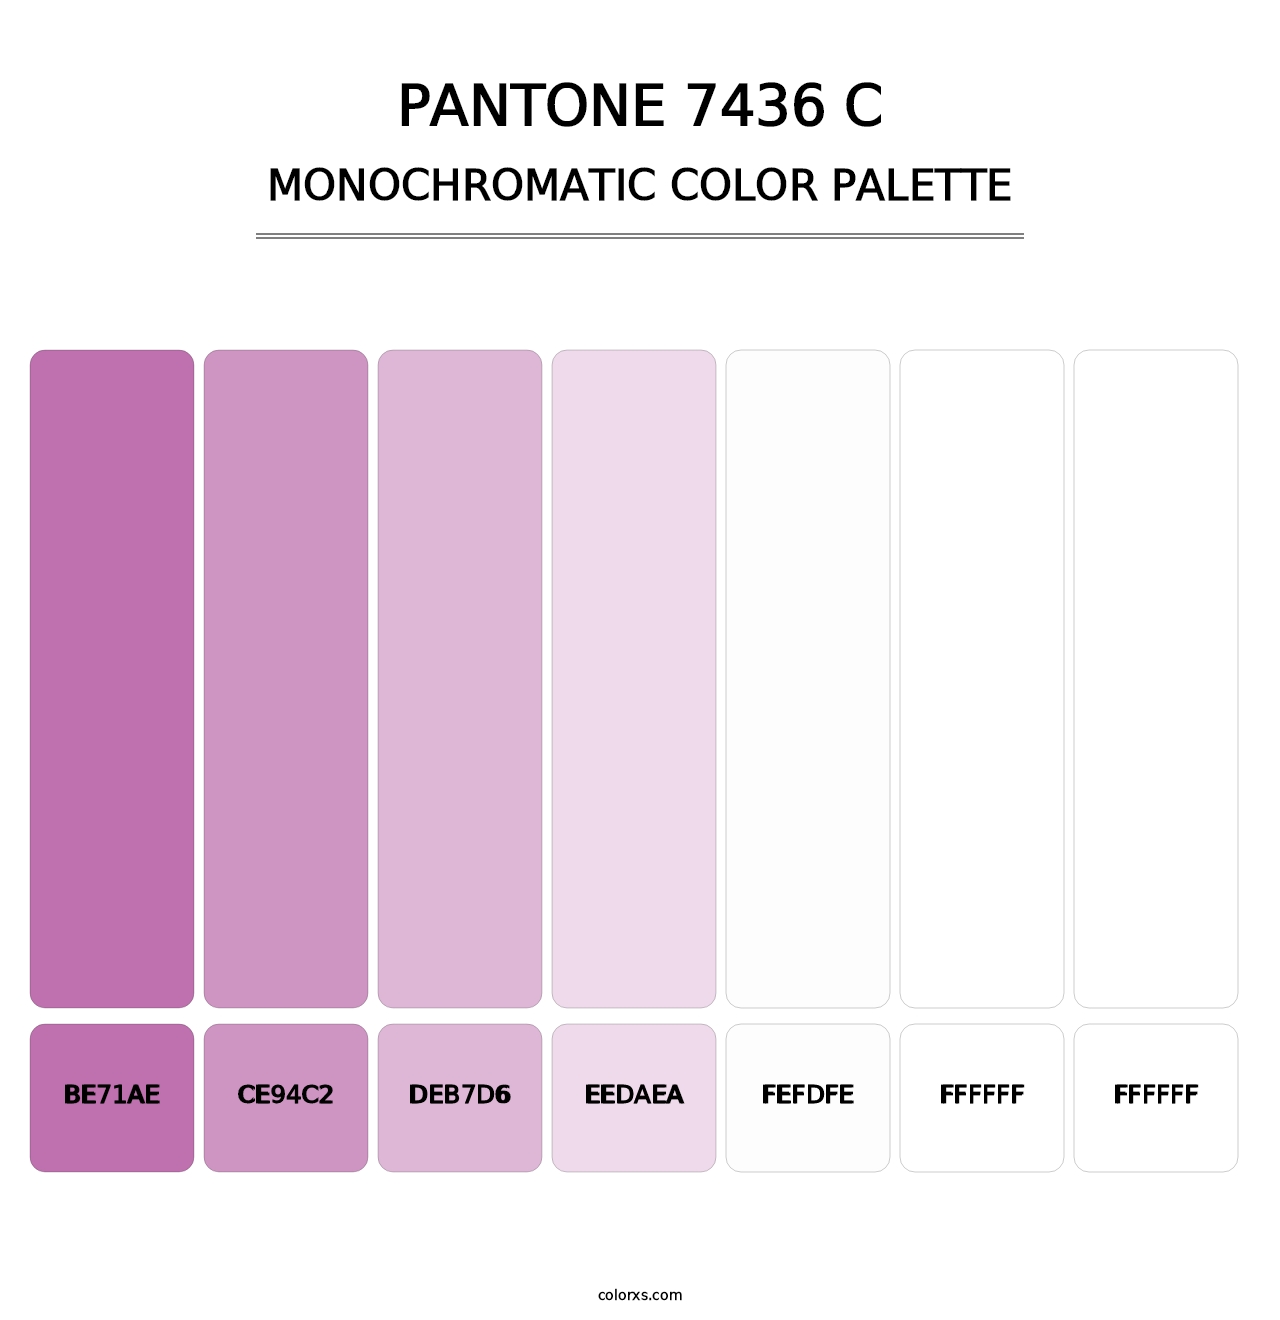 PANTONE 7436 C - Monochromatic Color Palette